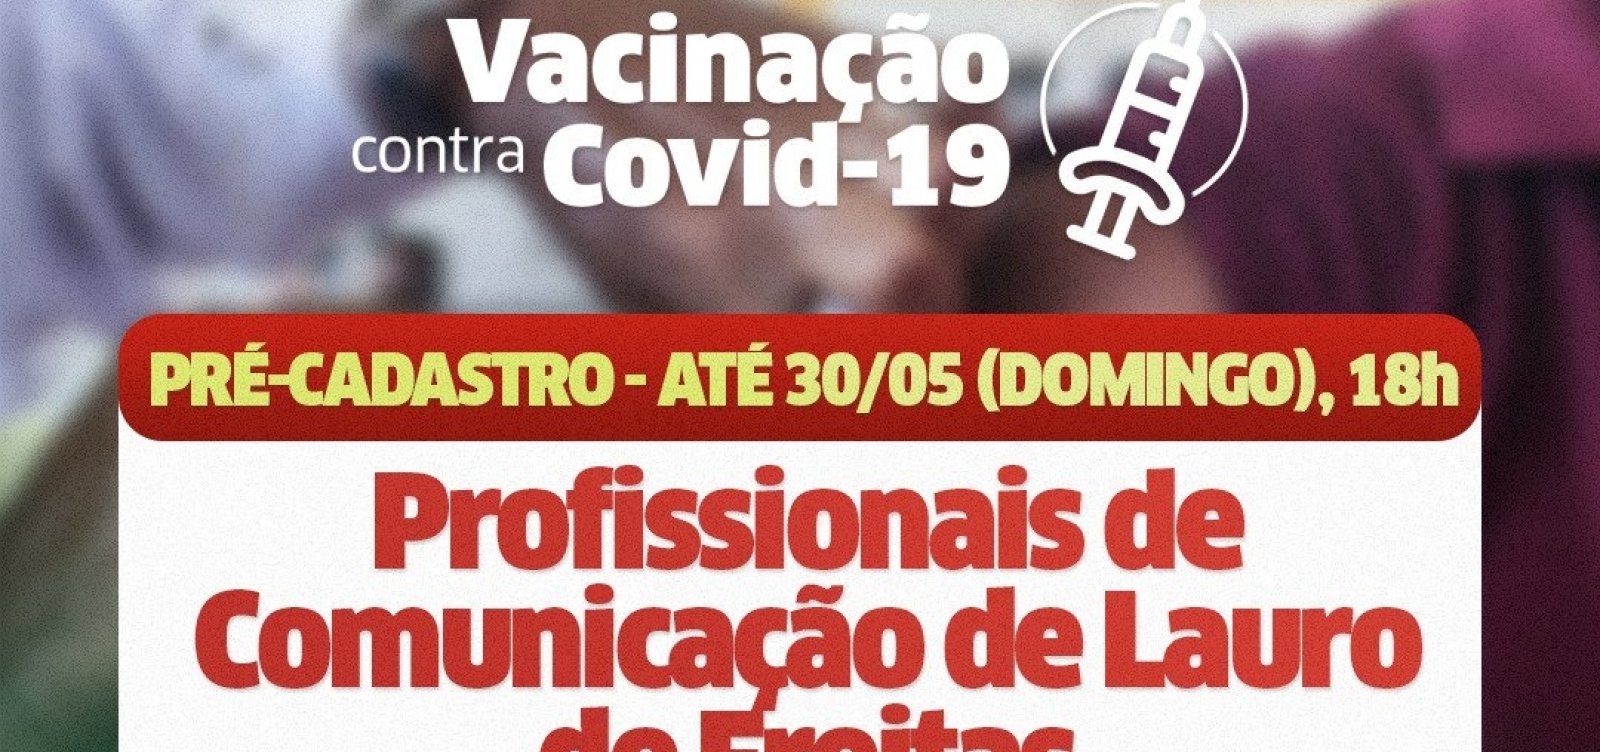 Lauro de Freitas finaliza cadastro e se prepara para vacinar profissionais de imprensa